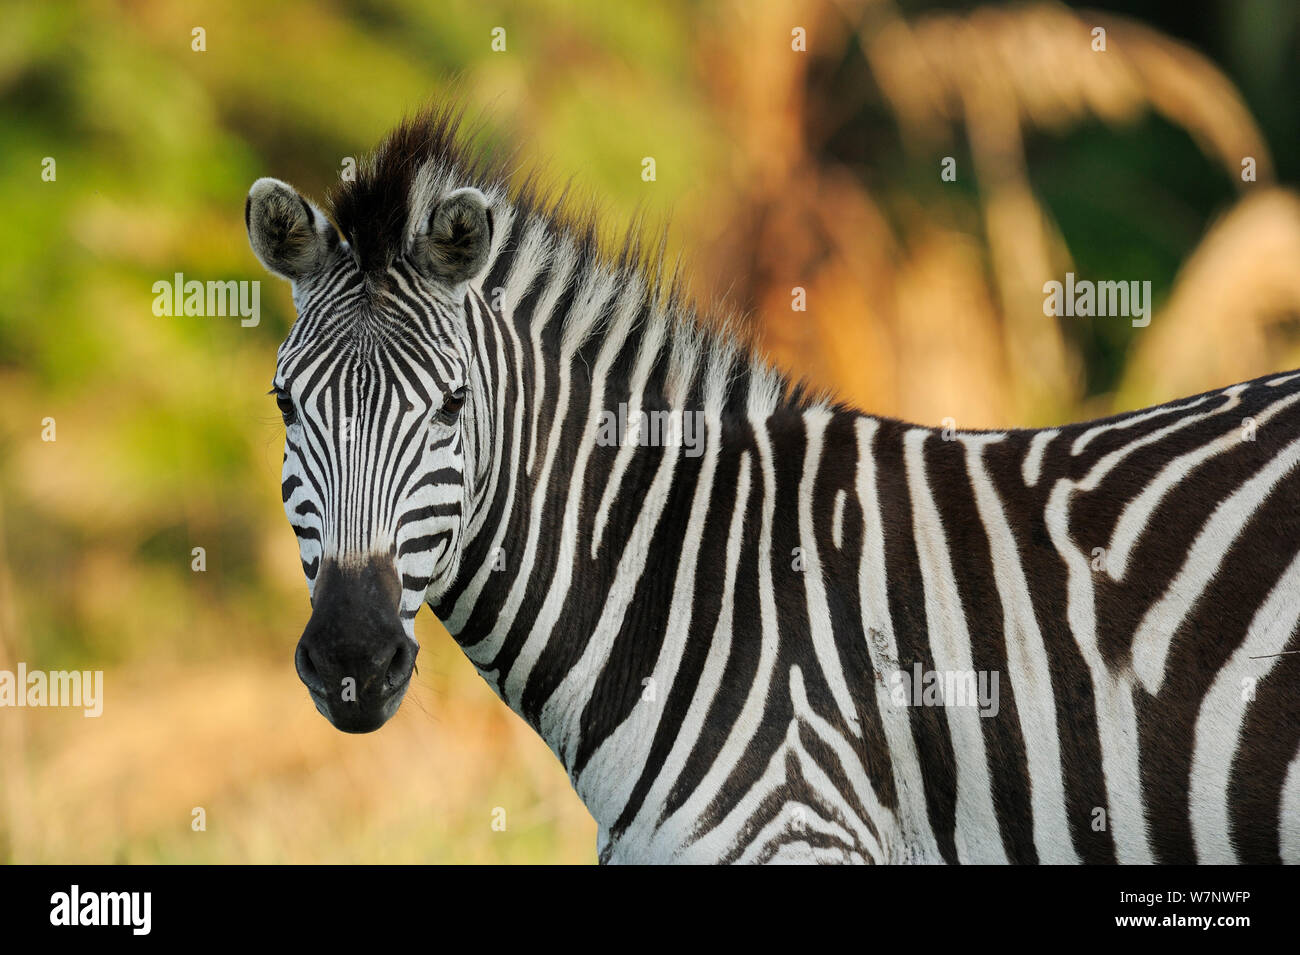 Common zebra (Equus quagga) profile portrait, Durban, South Africa Stock Photo